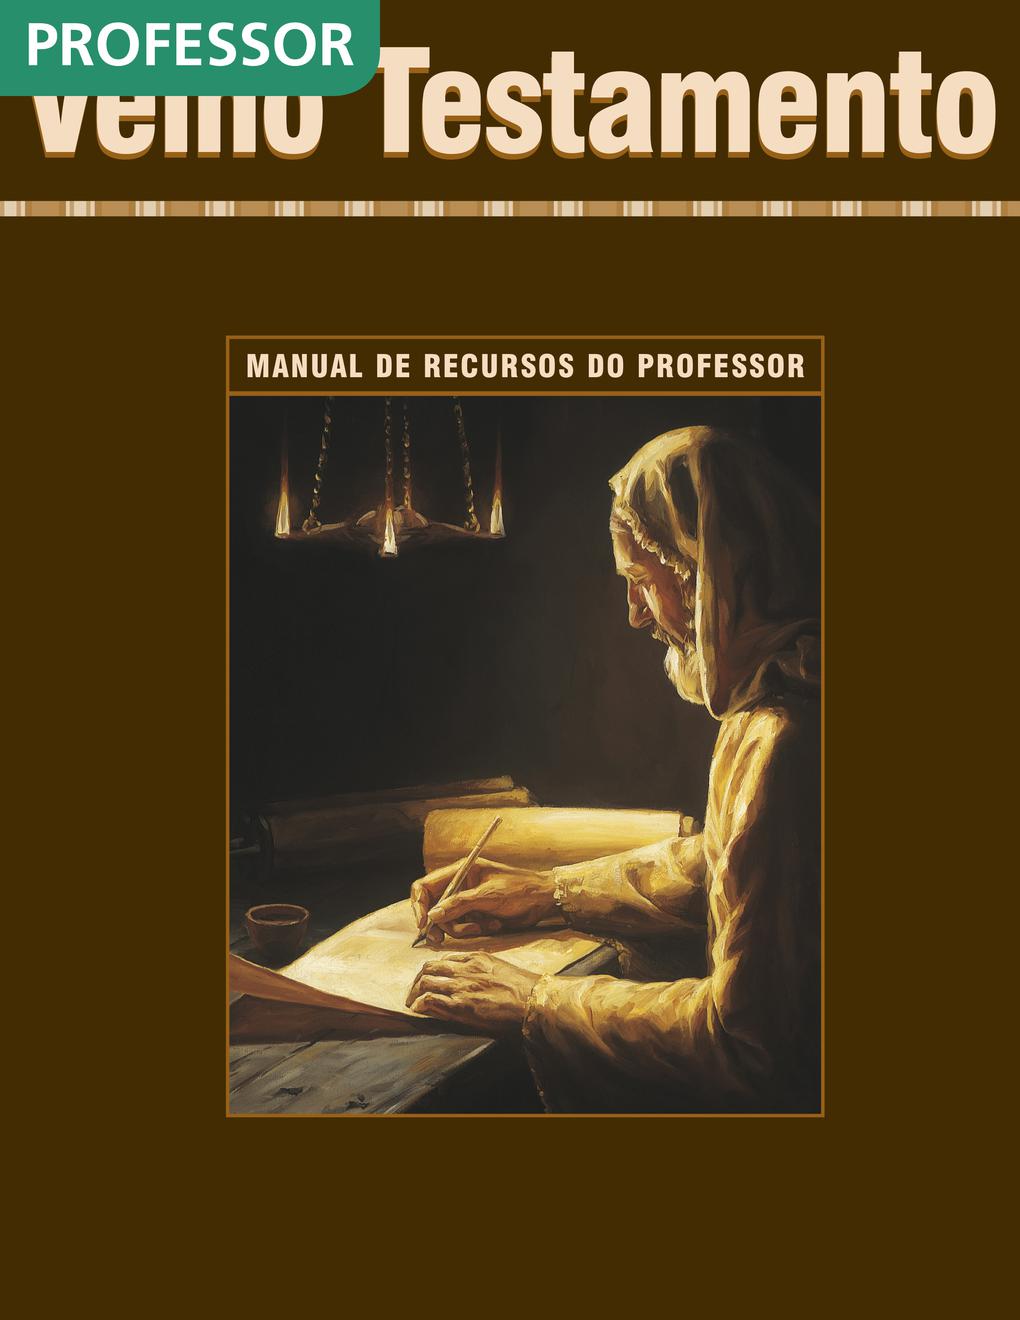 Velho Testamento — Manual de Recursos do Professor do Seminário